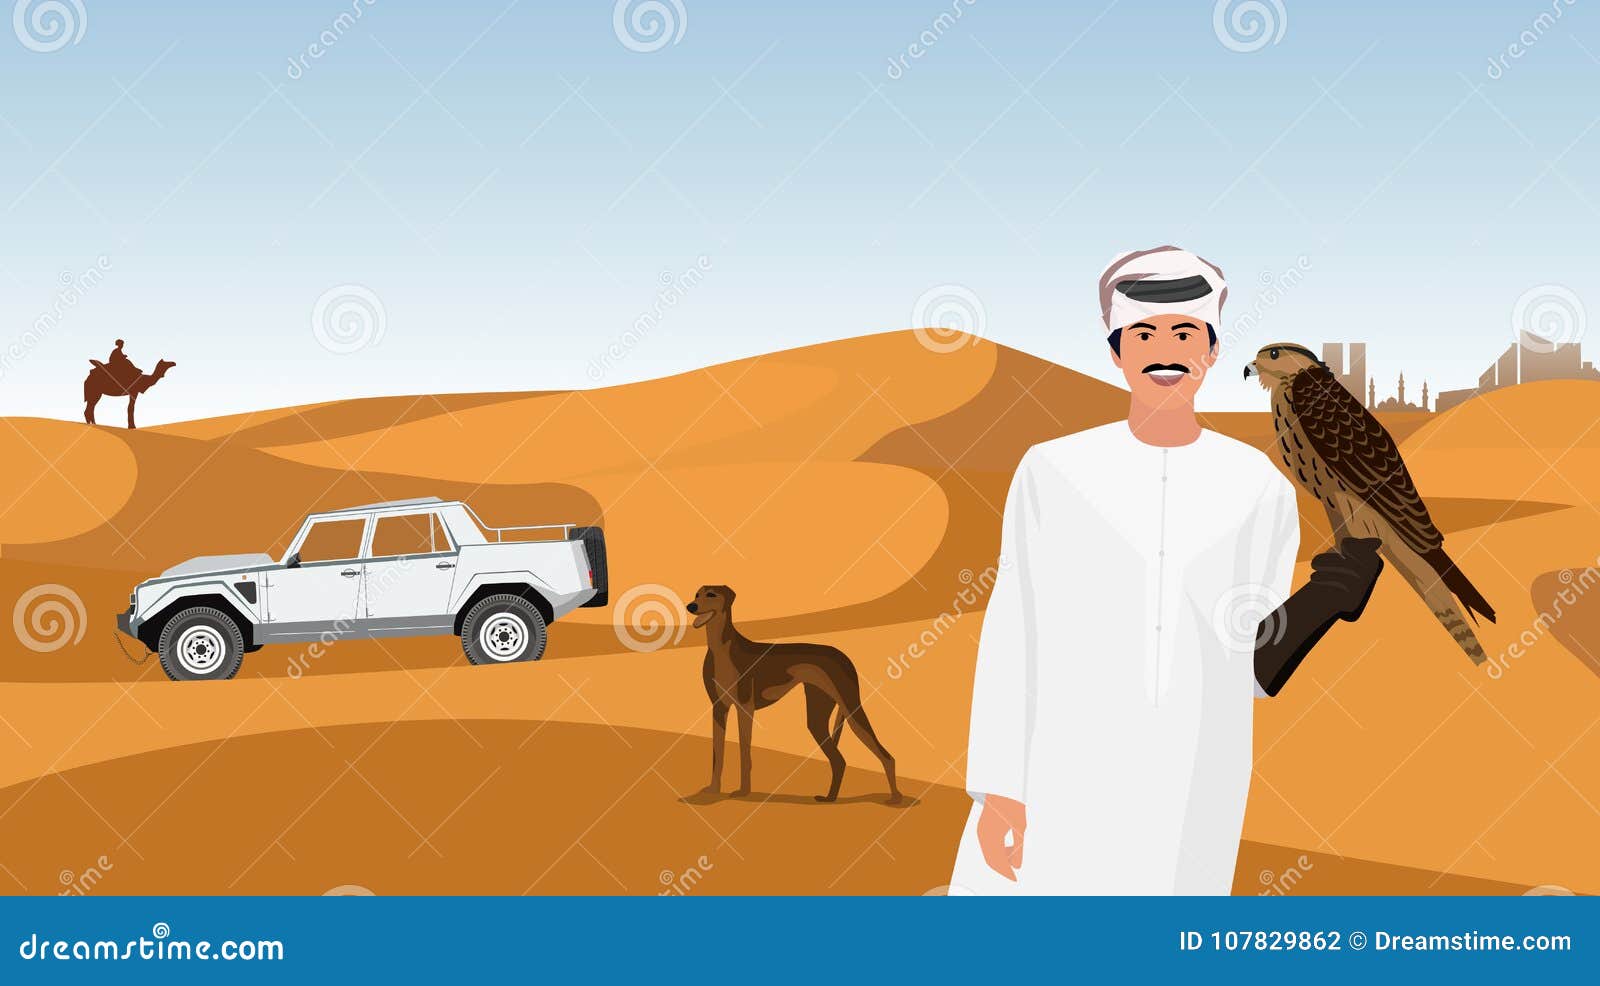 Falcoaria Dos Xeiques árabes No Deserto Ilustração do Vetor